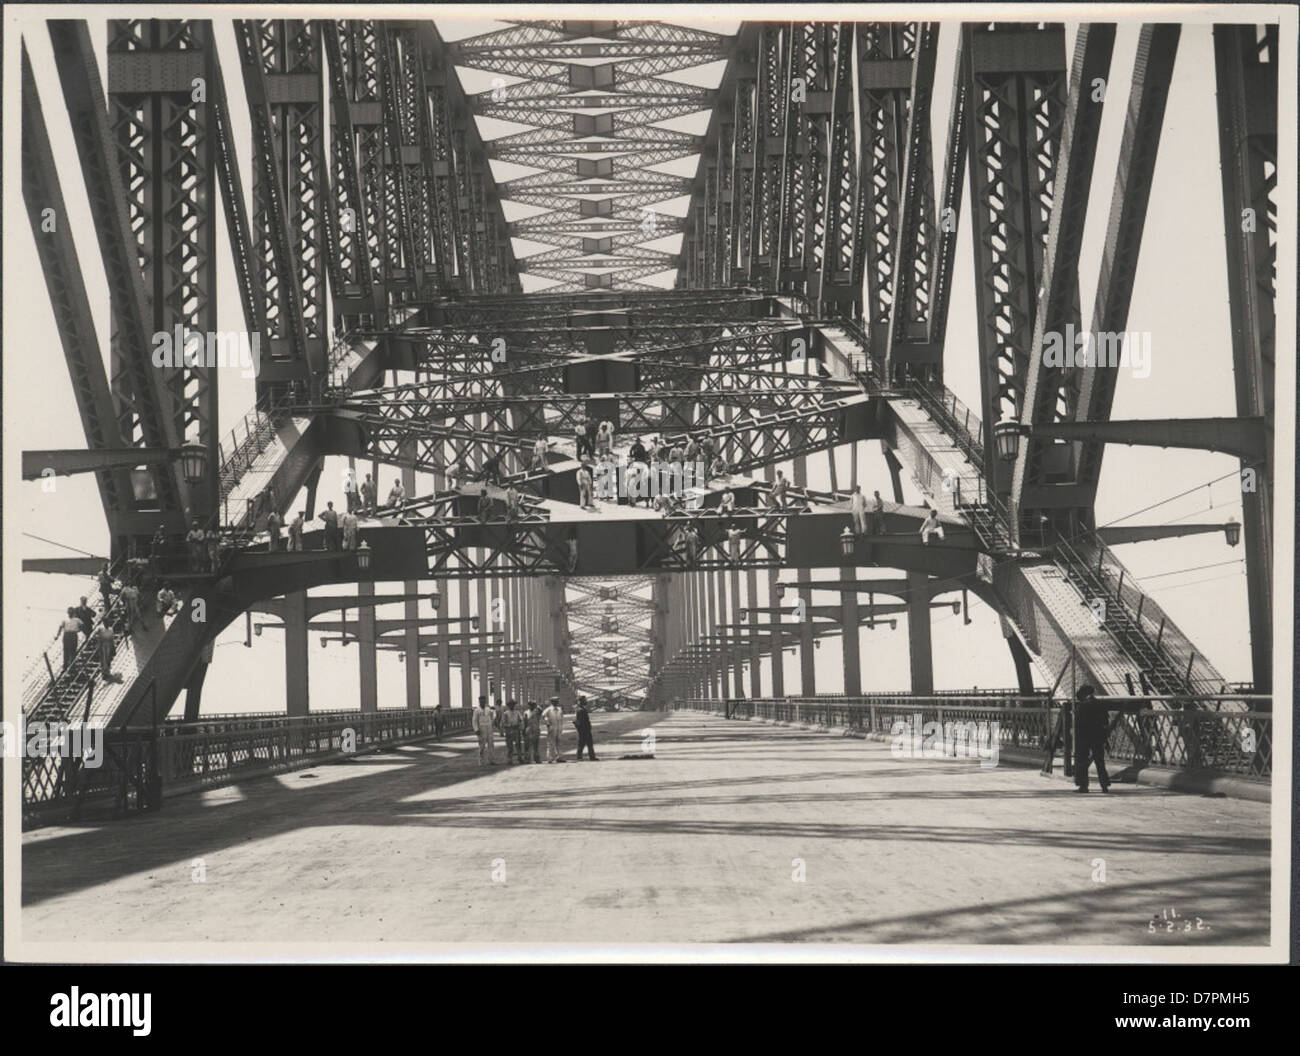 87/1353-142tirage photographique, des ouvriers sur le Harbour Bridge, de l'argent / gélatine / papier, photographie de la Nouvelle Galles du sud Ministère des Travaux publics, Sydney, Australie, Février, 1932 Banque D'Images